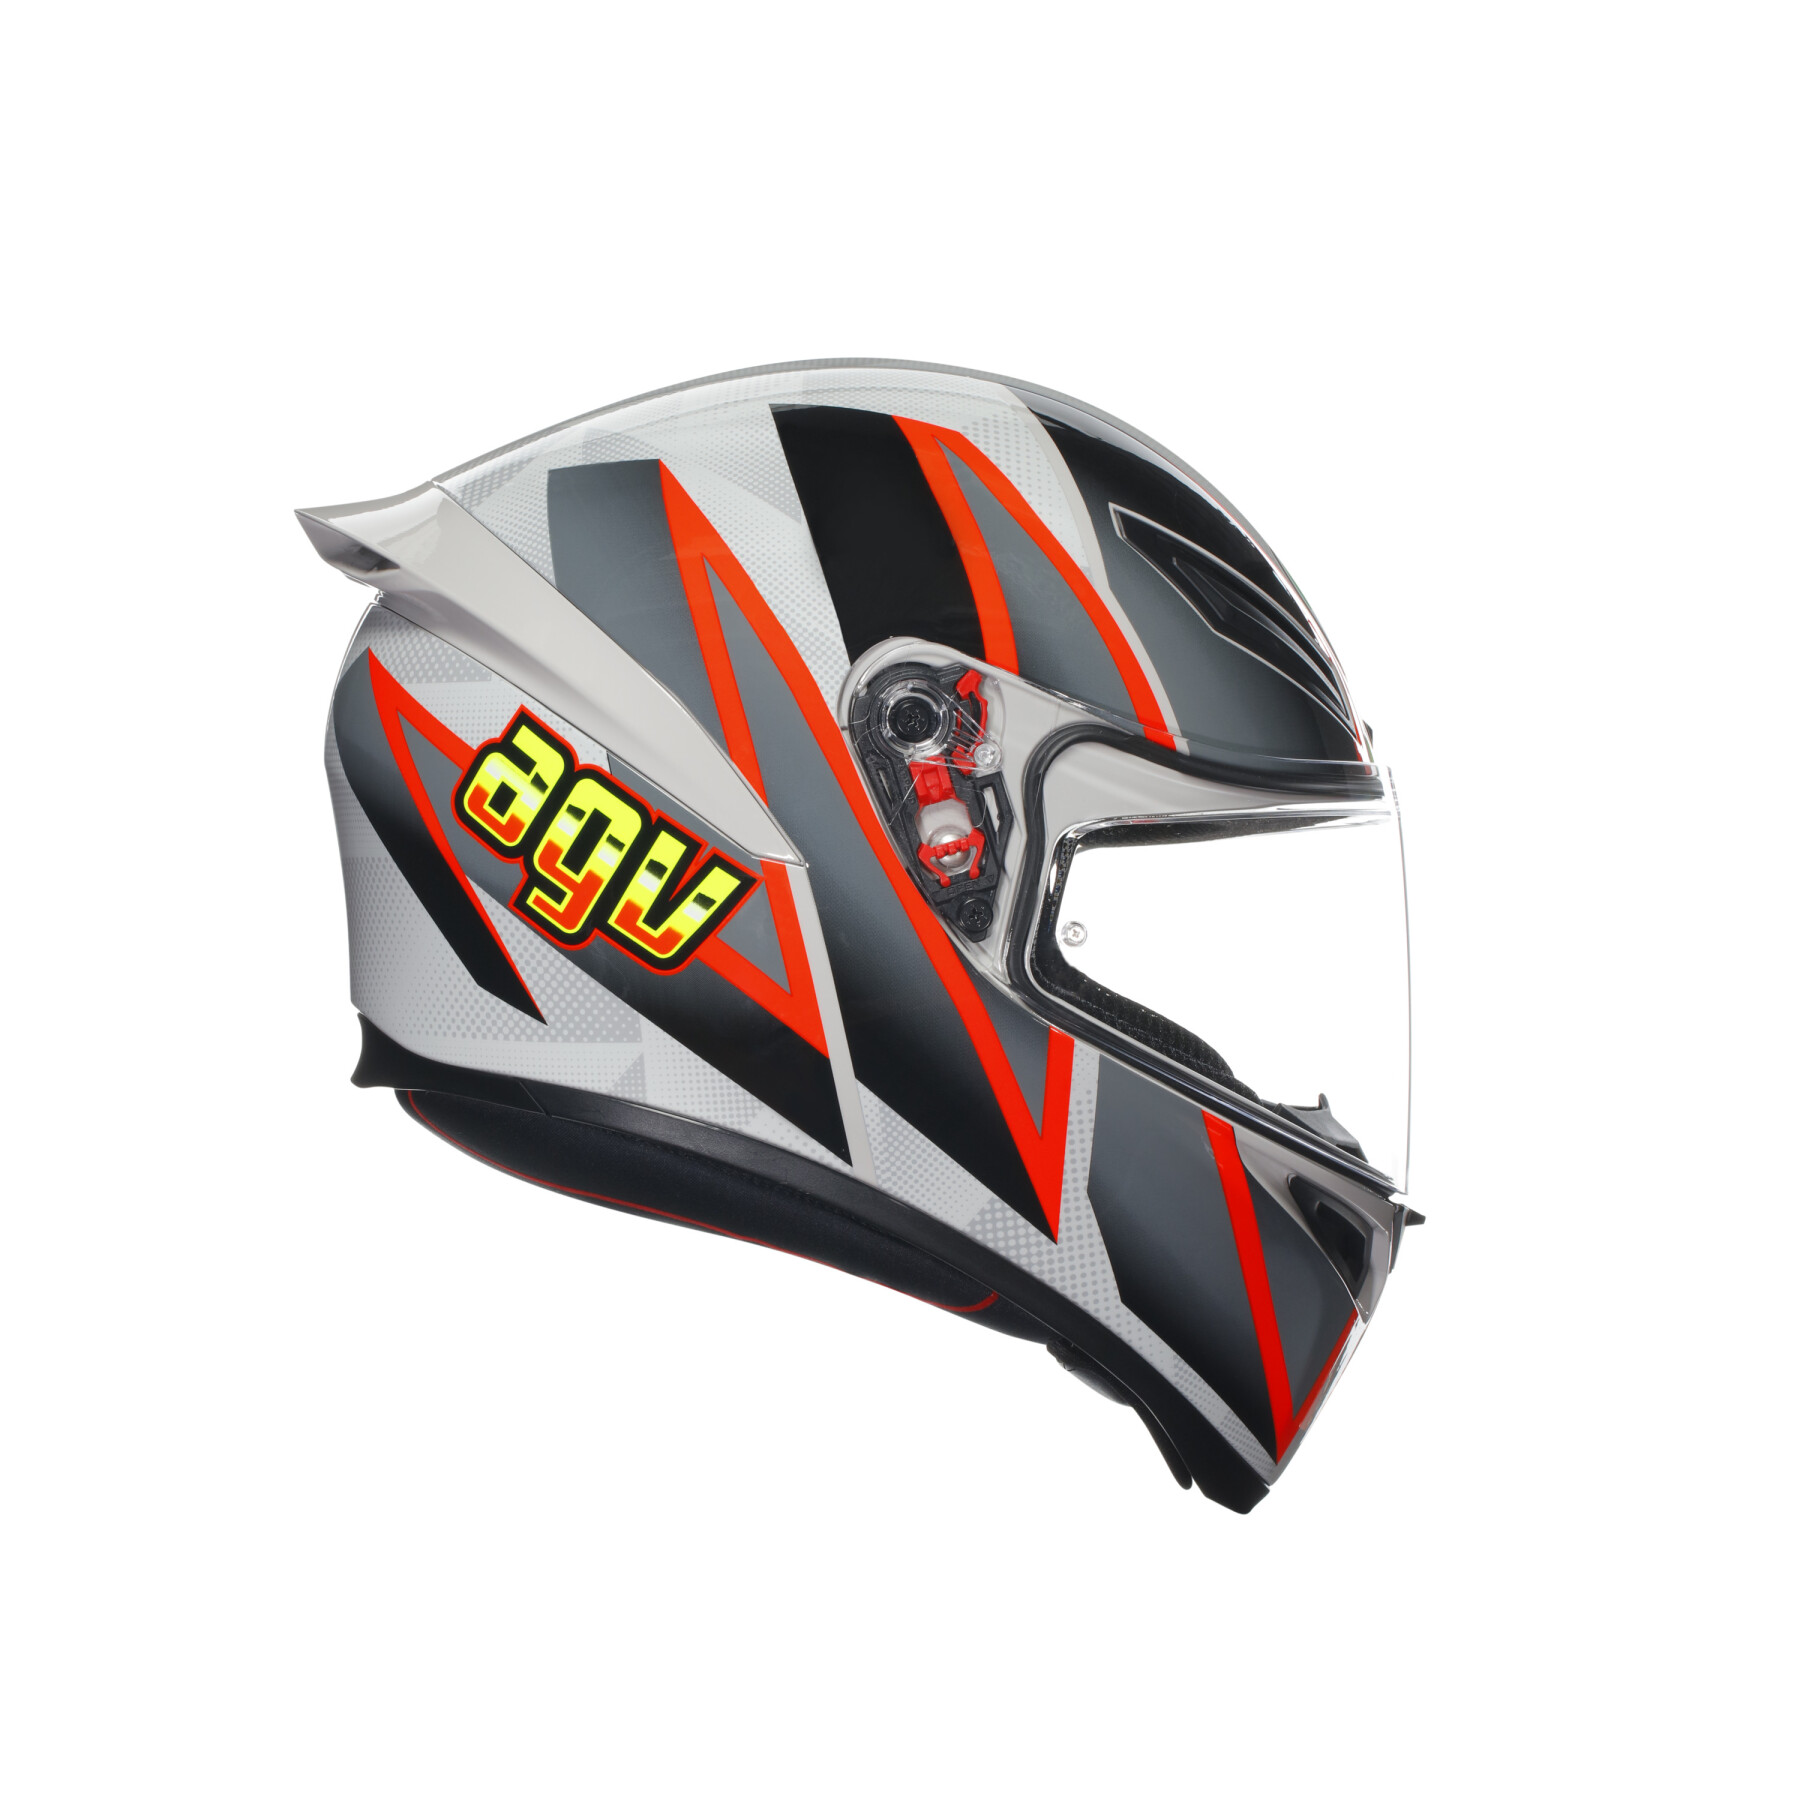 Full face motorcycle helmet AGV K1 S Blipper